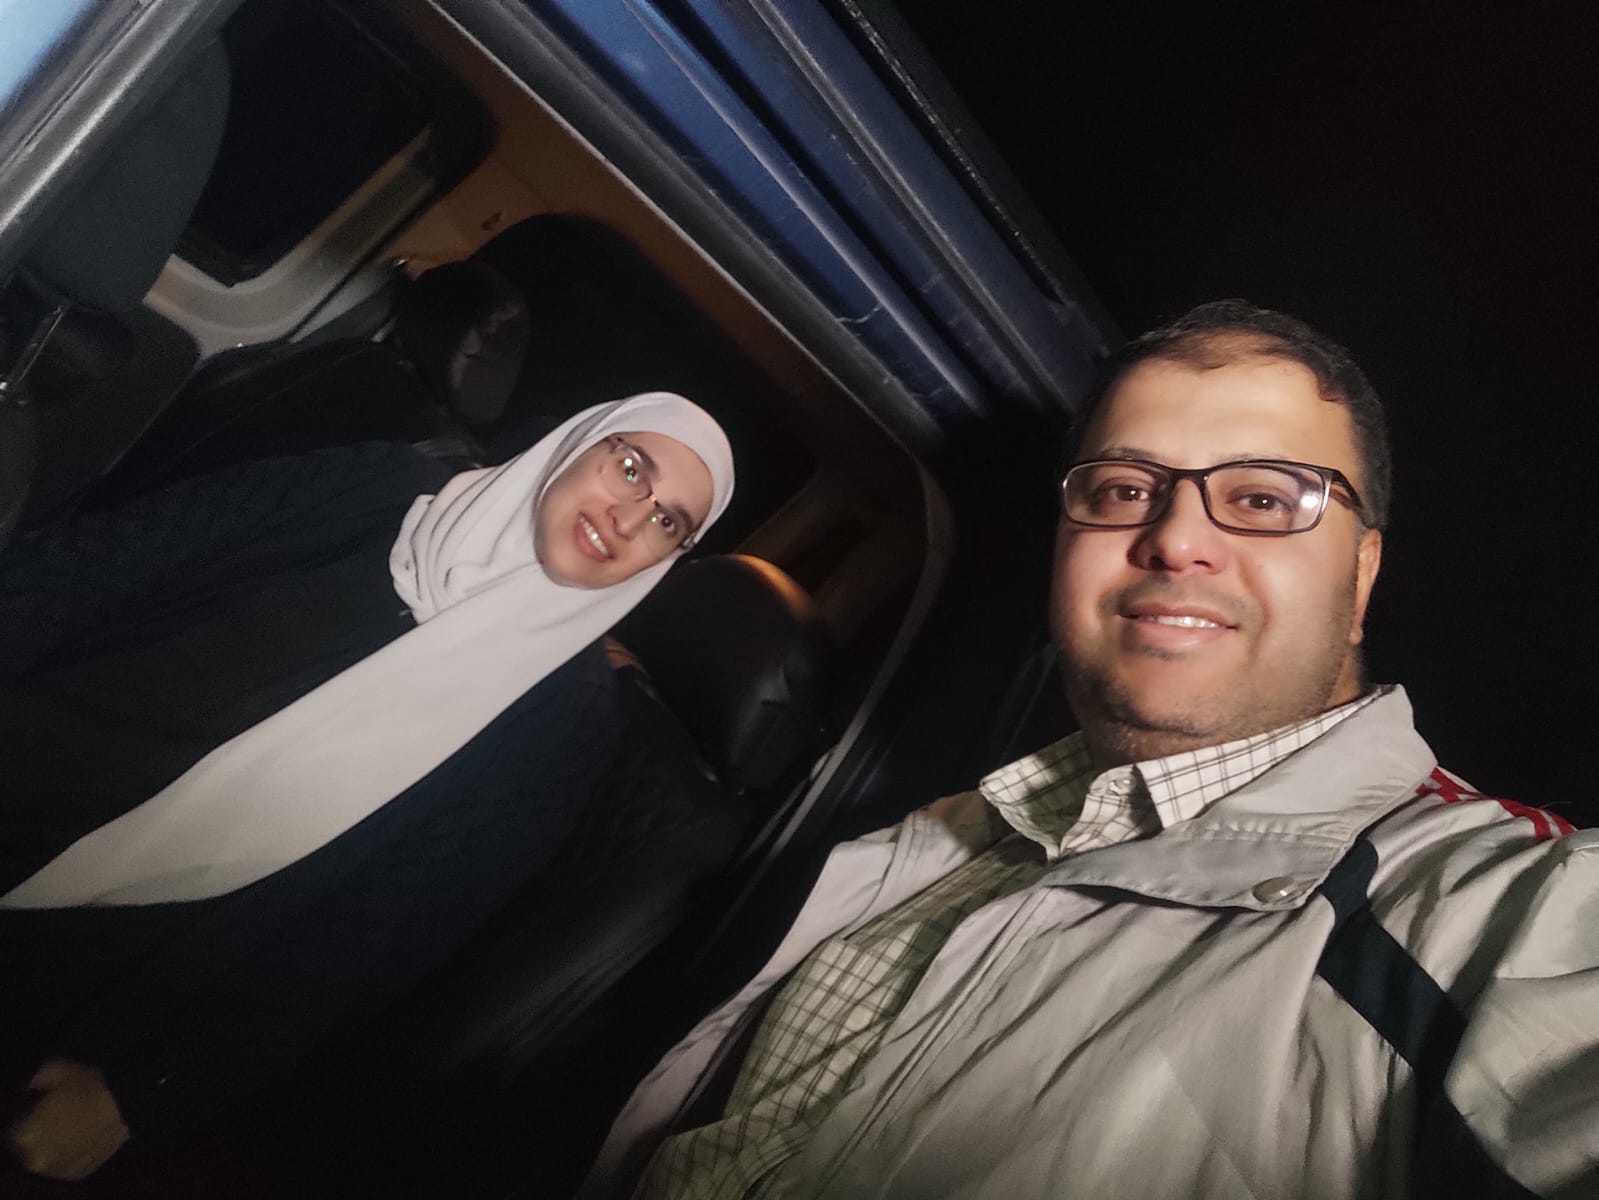 الصحافية سمية جوابرة بعد الإفراج عنها، بصحبة زوجها الصحافي طارق سركجي